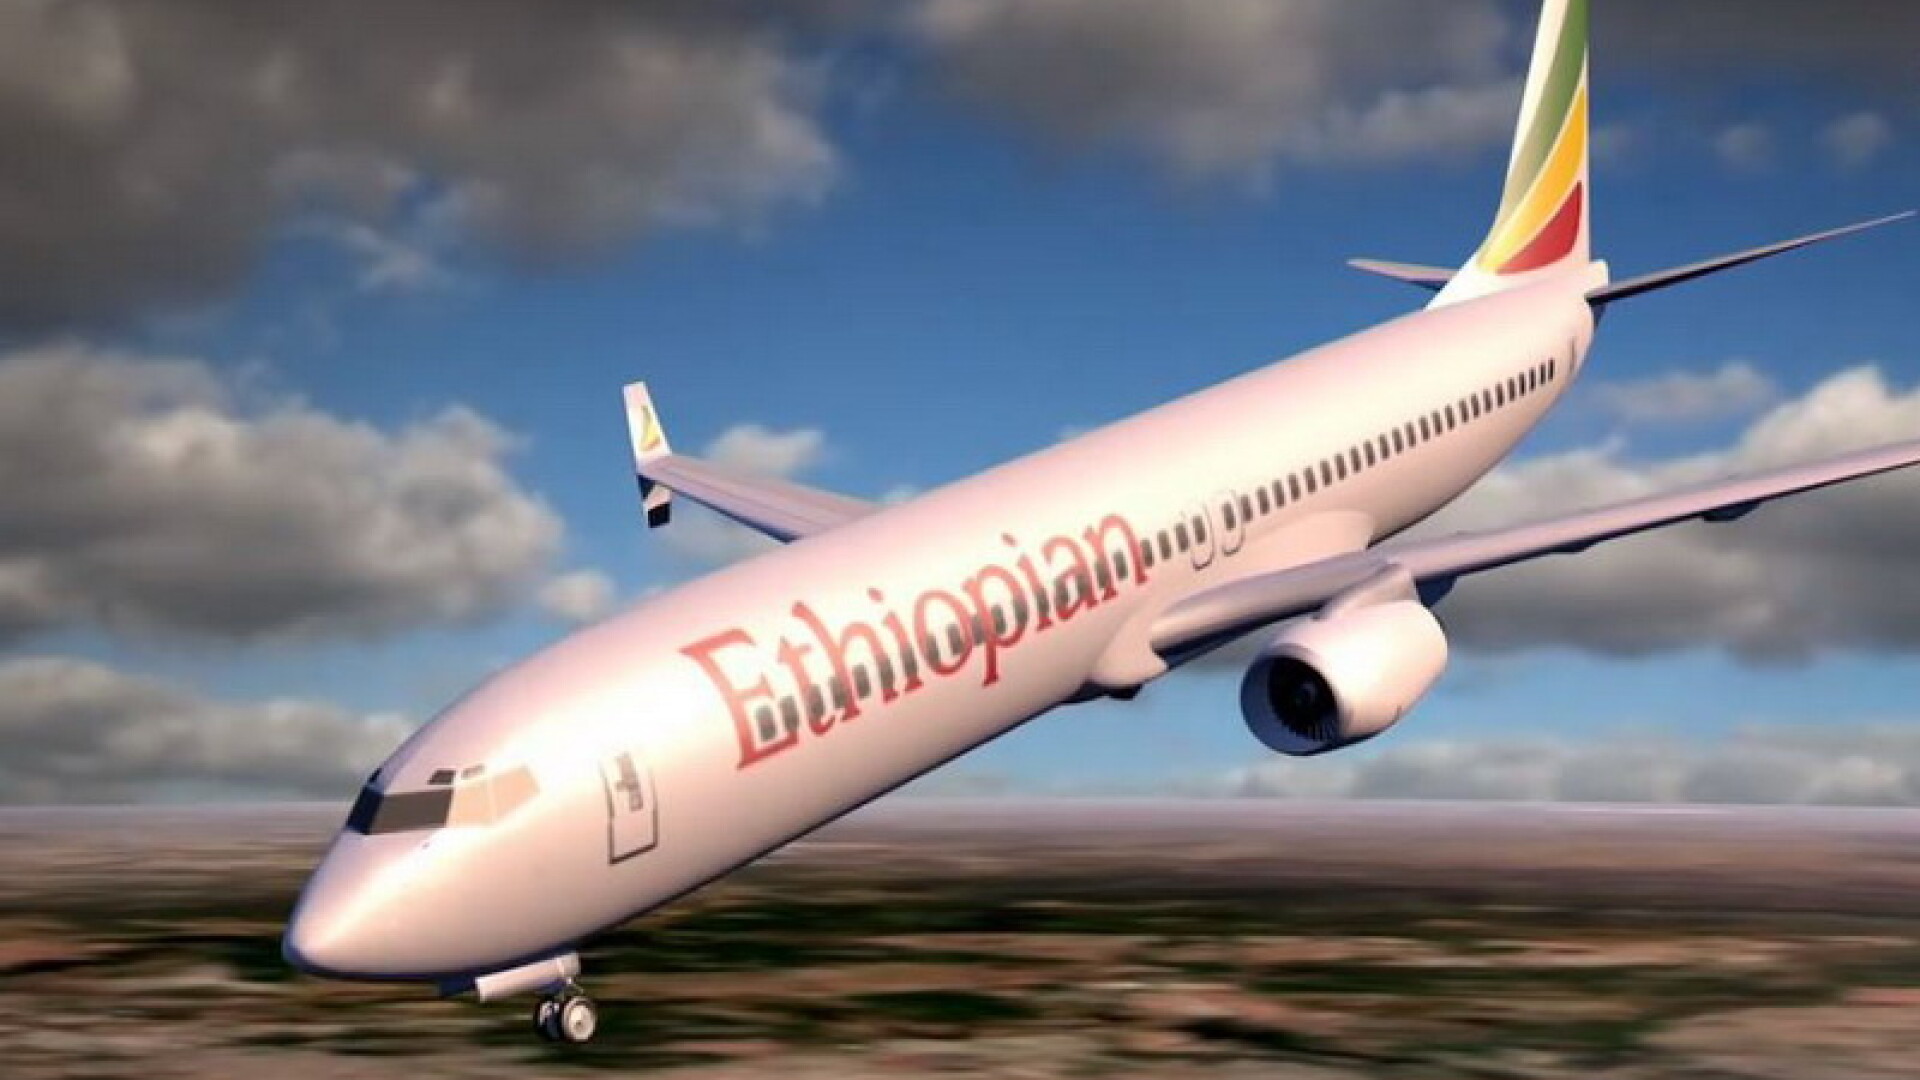 Ce a provocat de fapt prăbușirea avionului Boeing în Etiopia